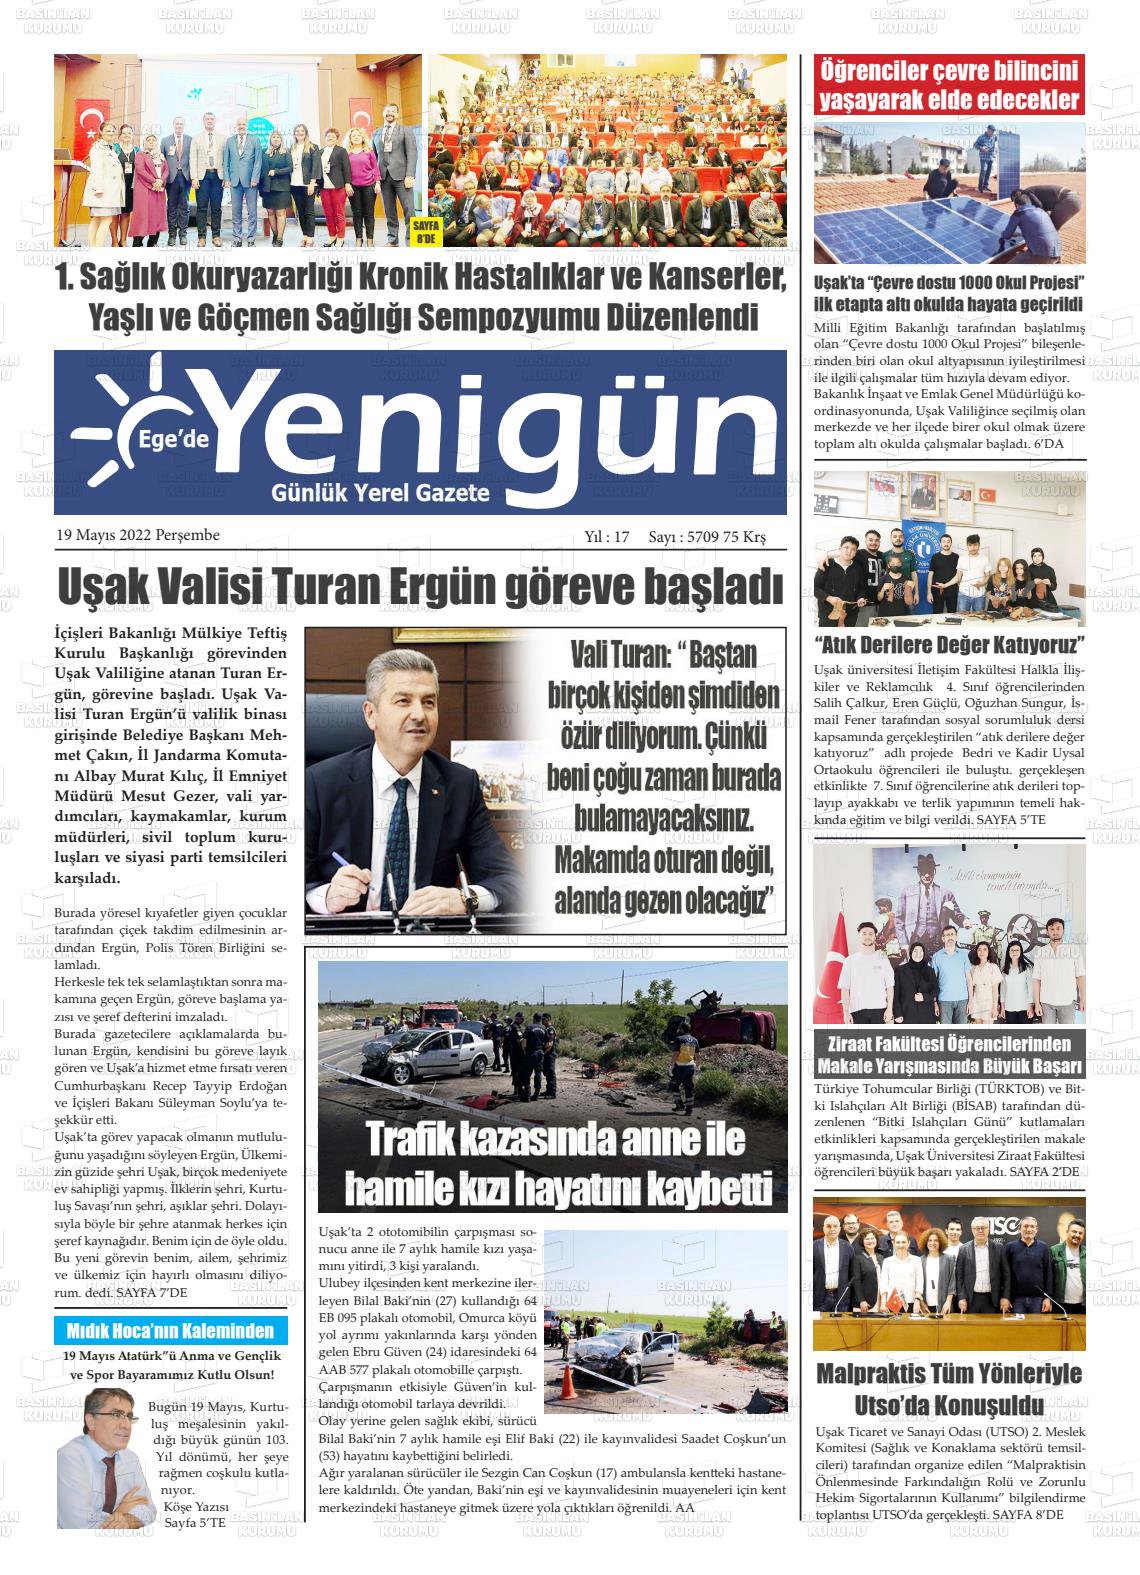 19 Mayıs 2022 EGE'DE YENİGÜN GAZETESİ Gazete Manşeti